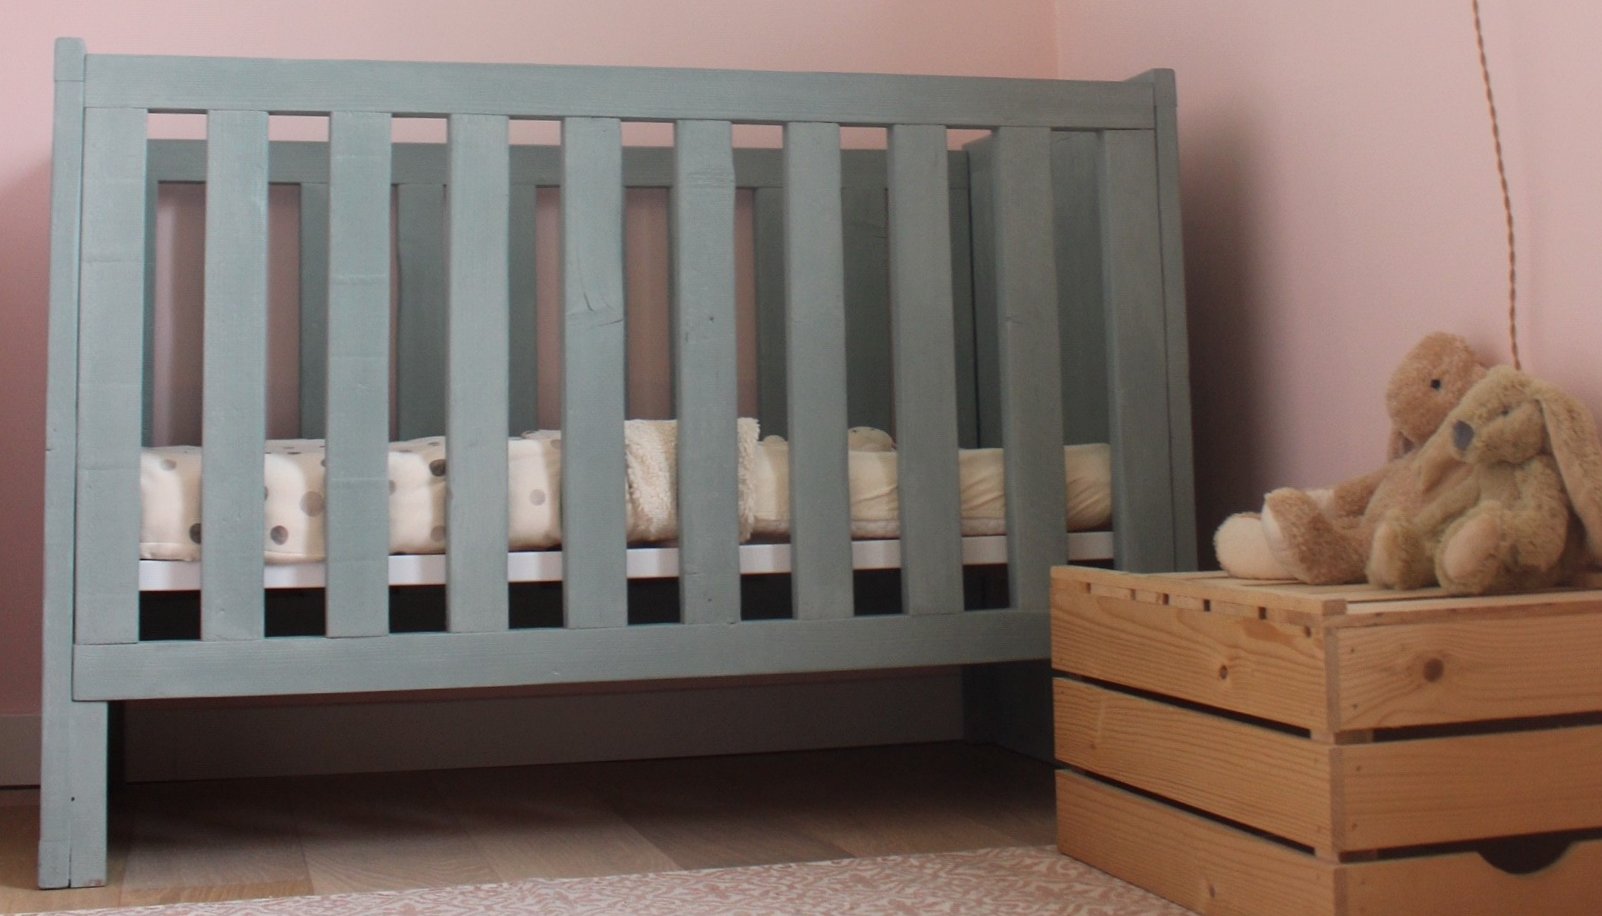 modus verkiezen wenselijk Het duurzame baby matras - Duurzame Kinderkamer Stylist